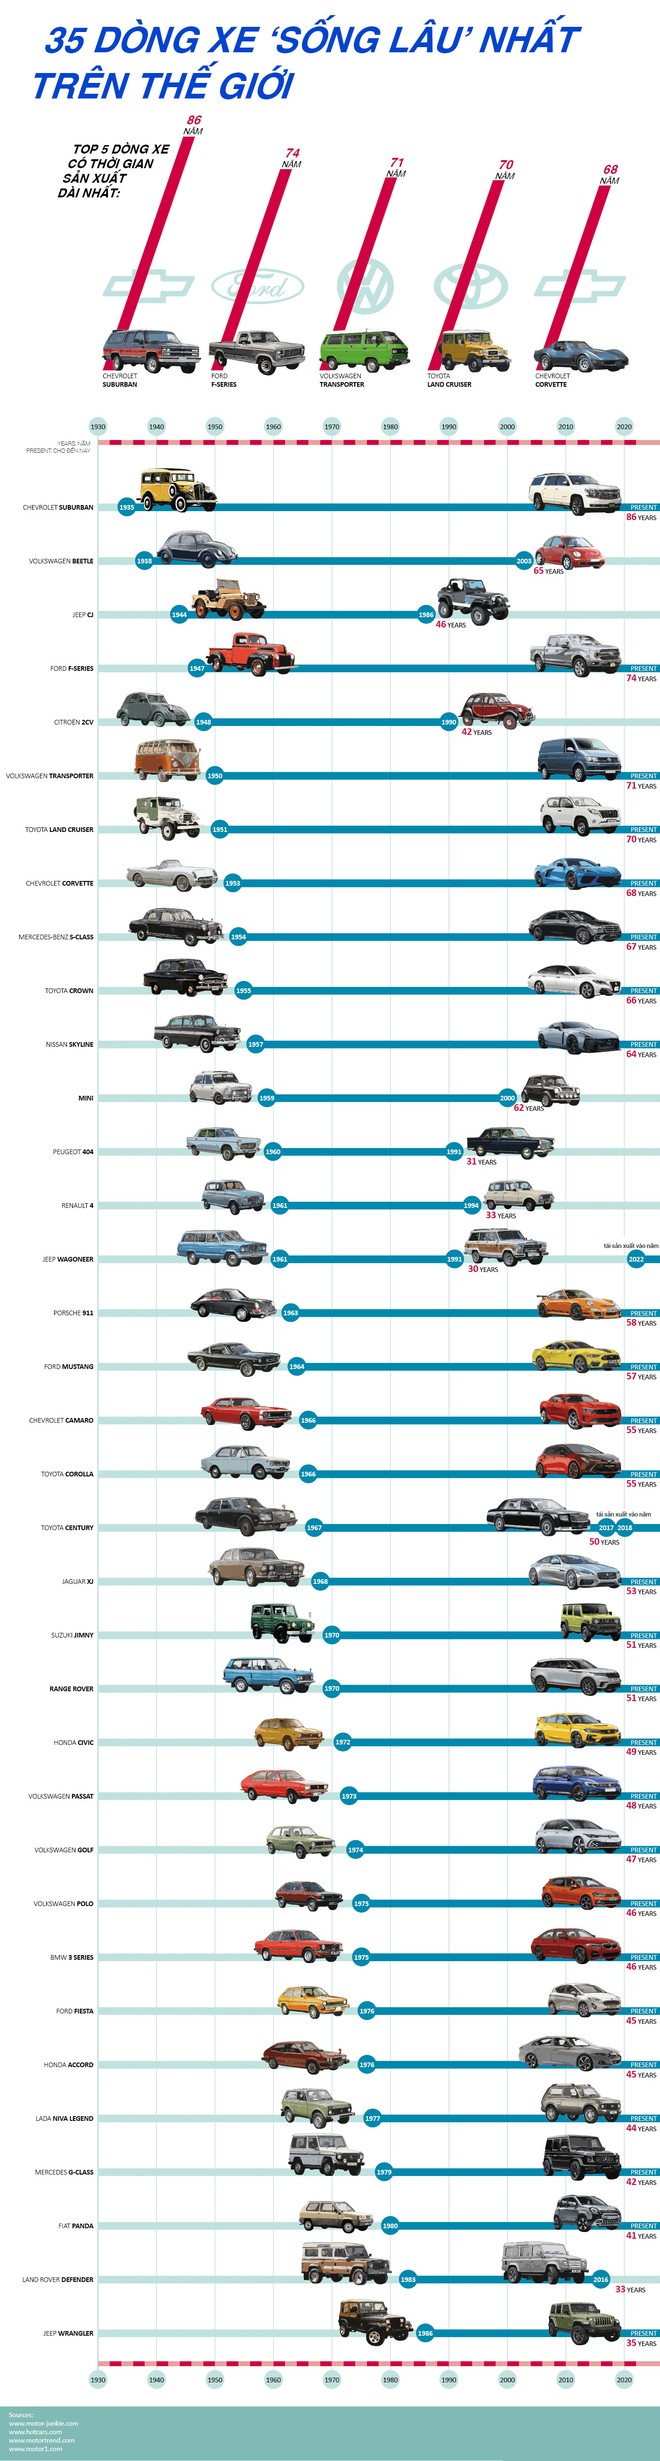 35 xe ô tô sống lâu nhất thế giới - Ảnh 2.